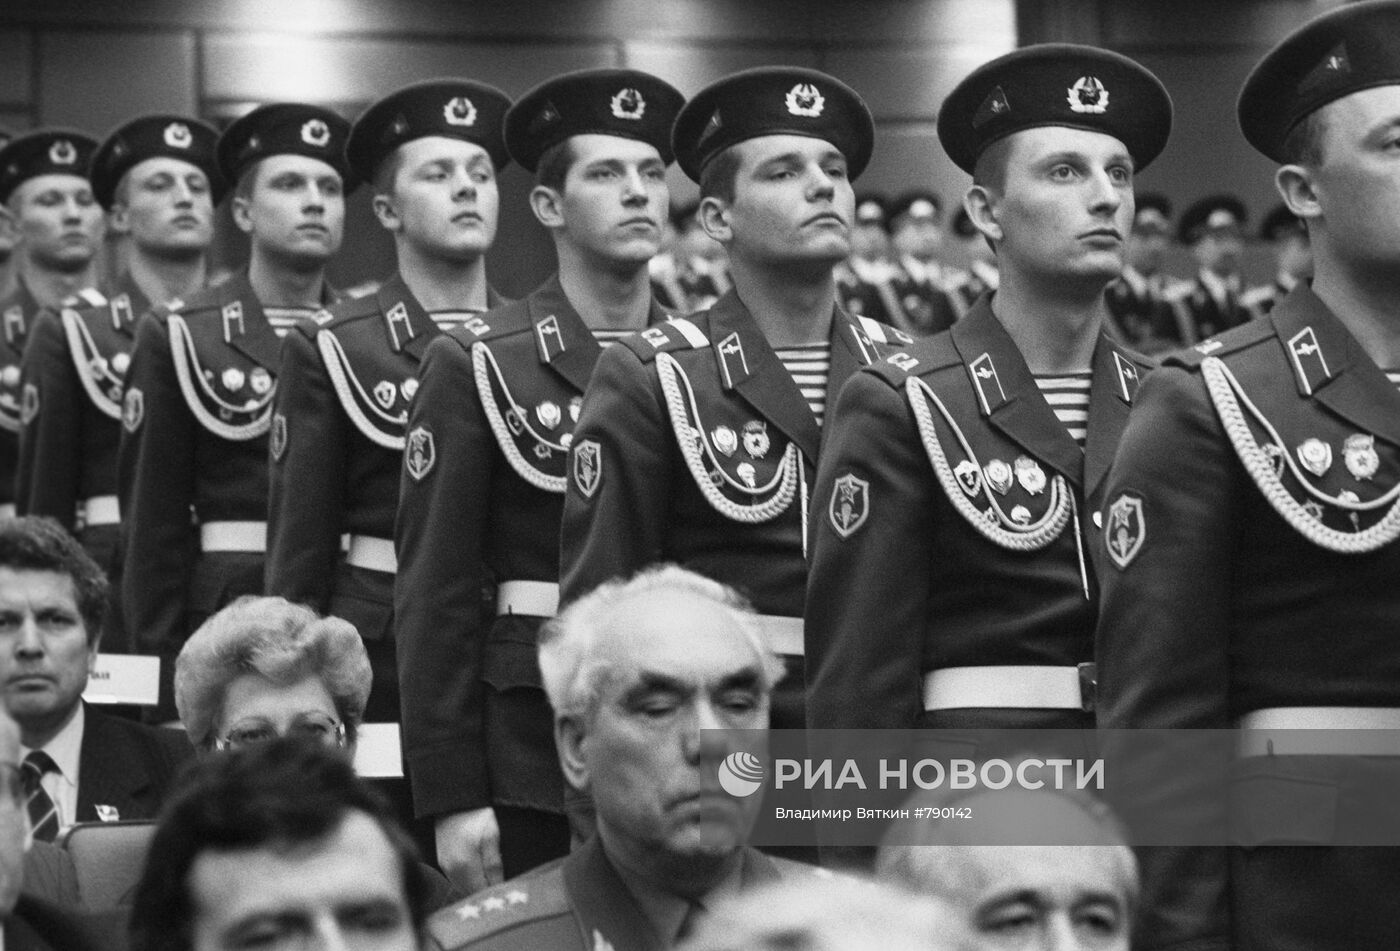 XXVII (двадцать седьмой) съезд КПСС в Москве